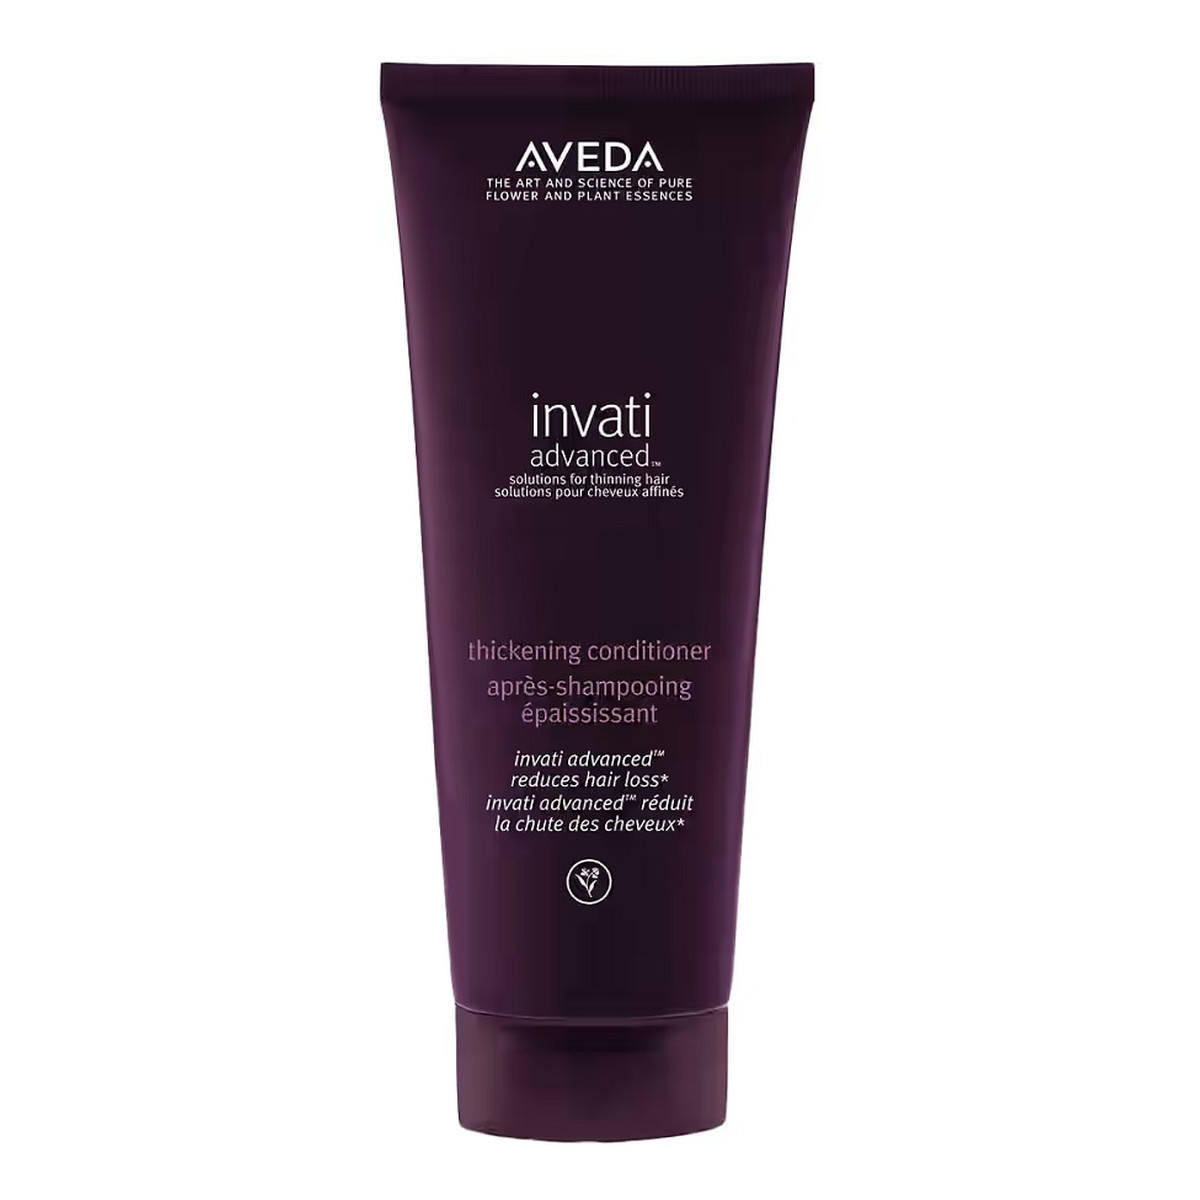 Aveda Invati advanced thickening conditioner zagęszczająca odżywka do włosów 200ml